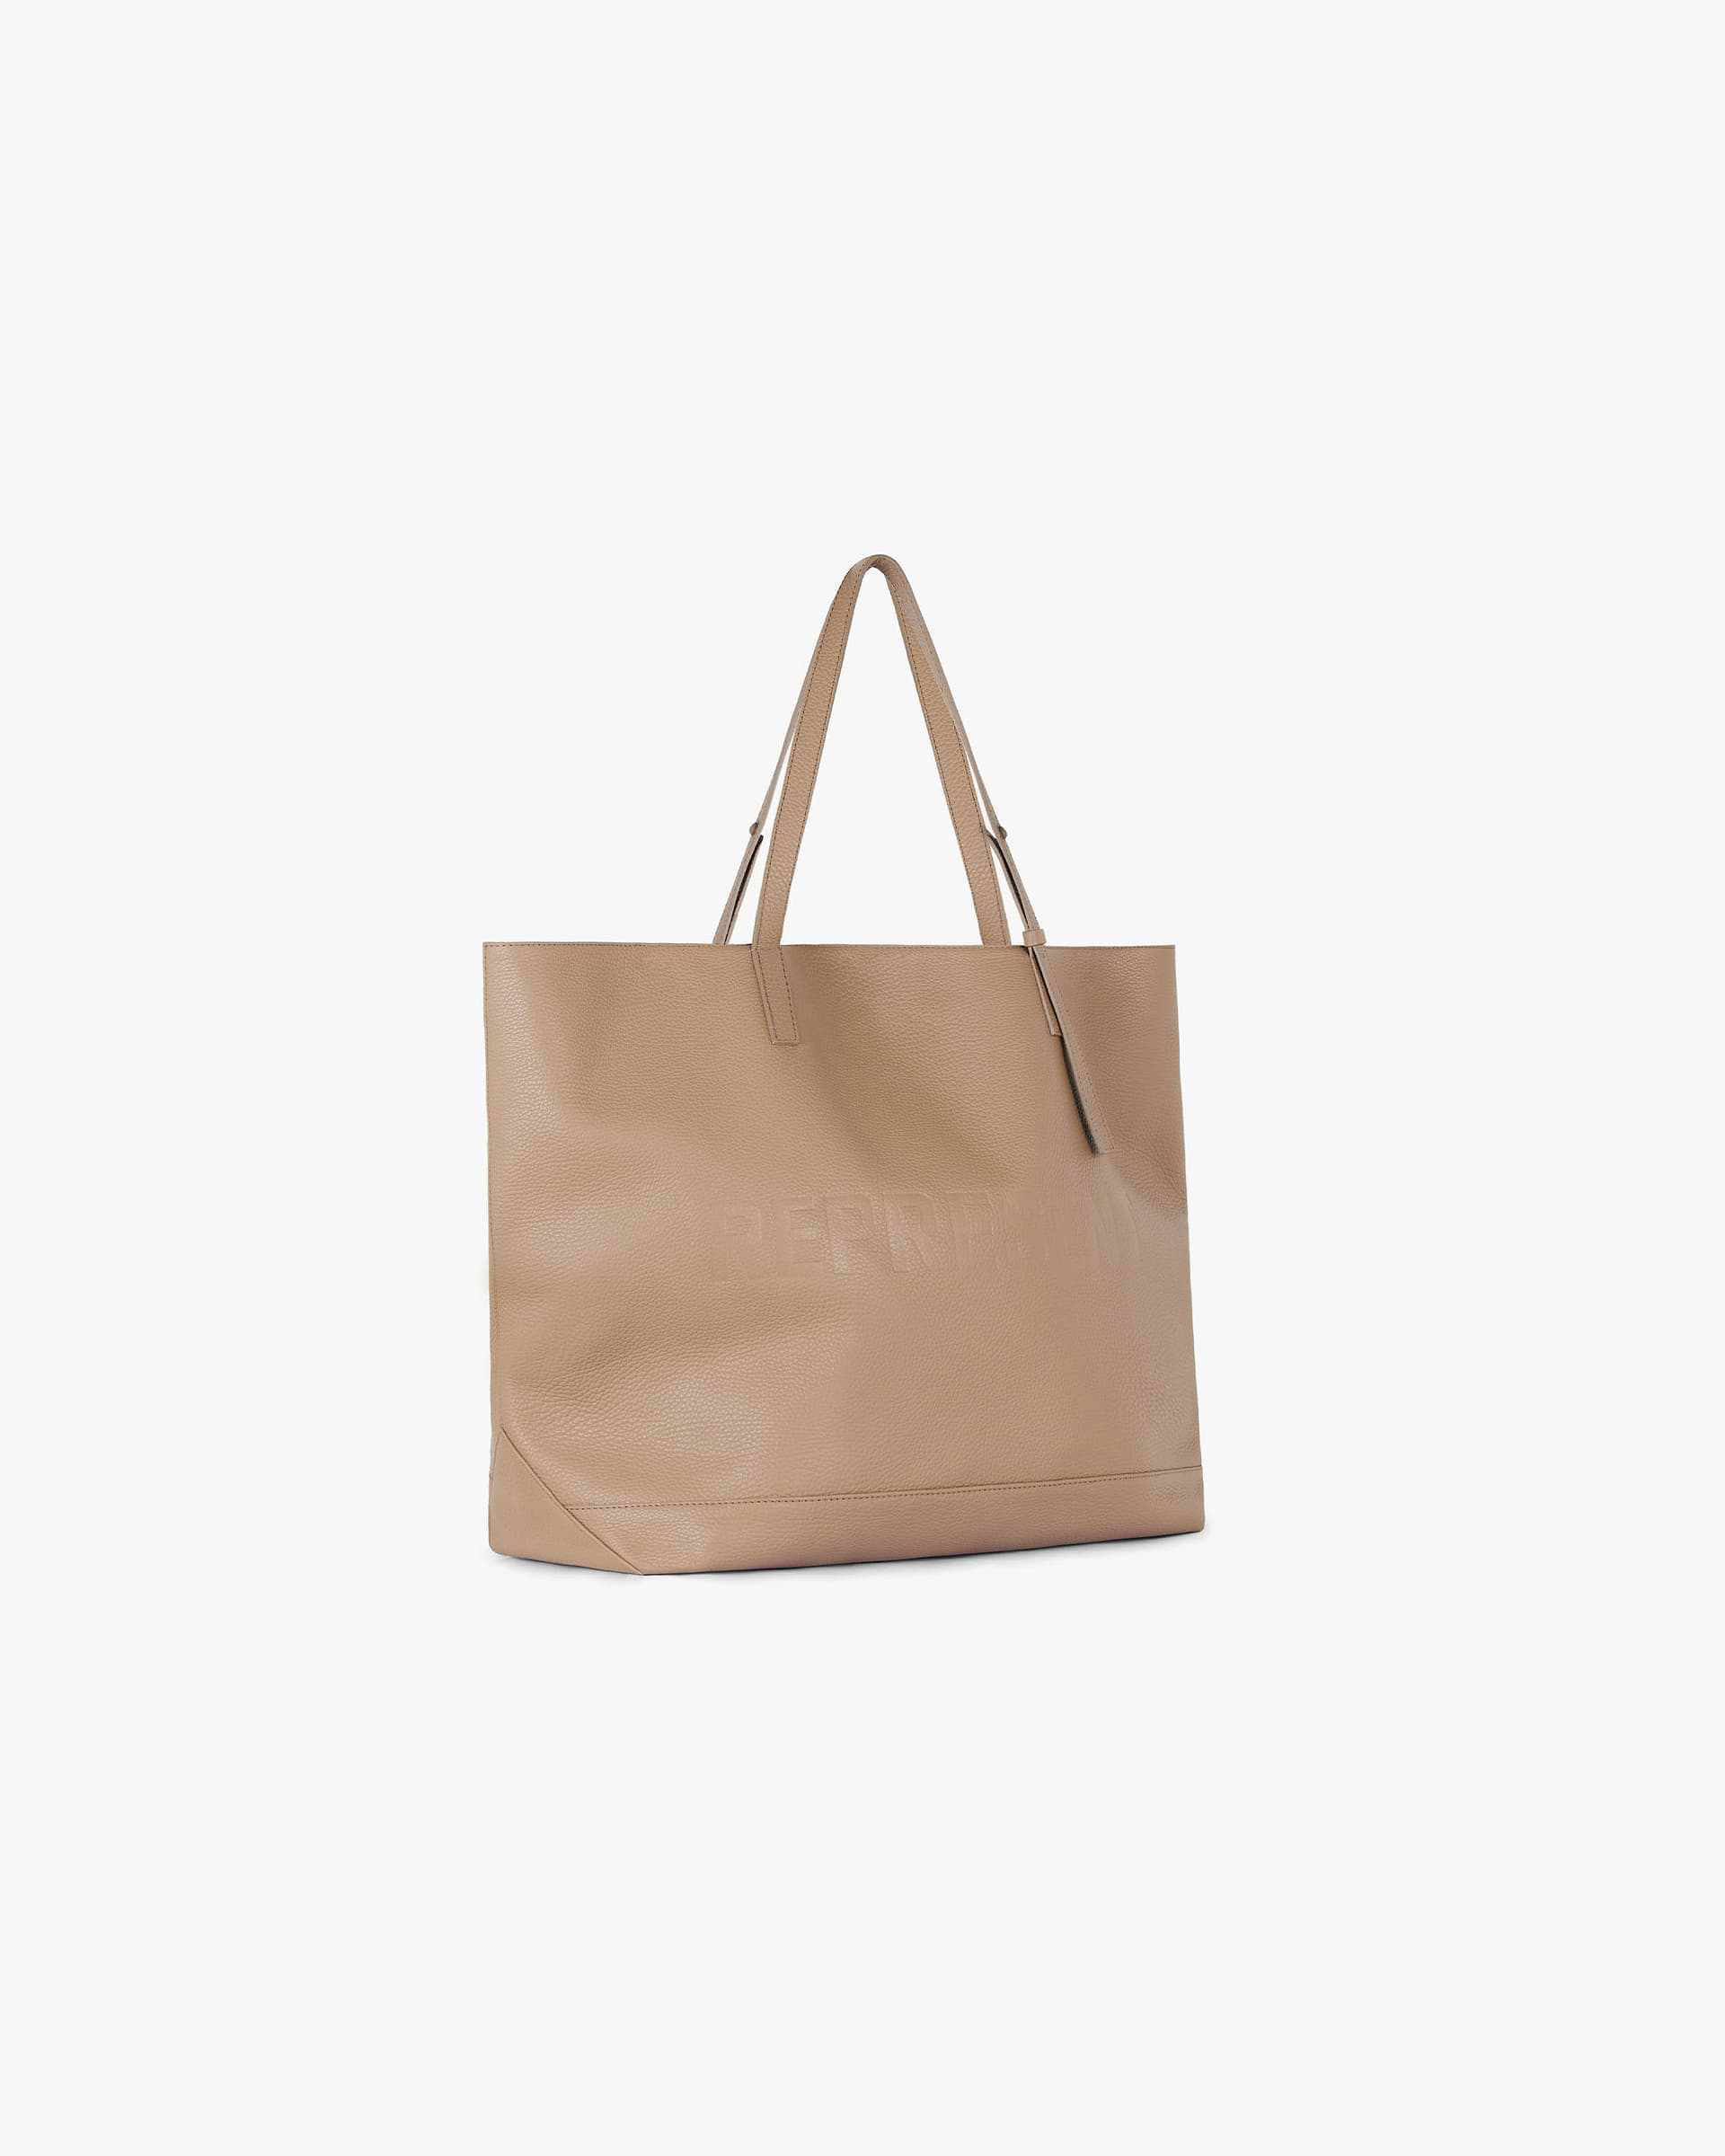 Leather Tote Bag | Sesame Accessories SC23 | Represent Clo